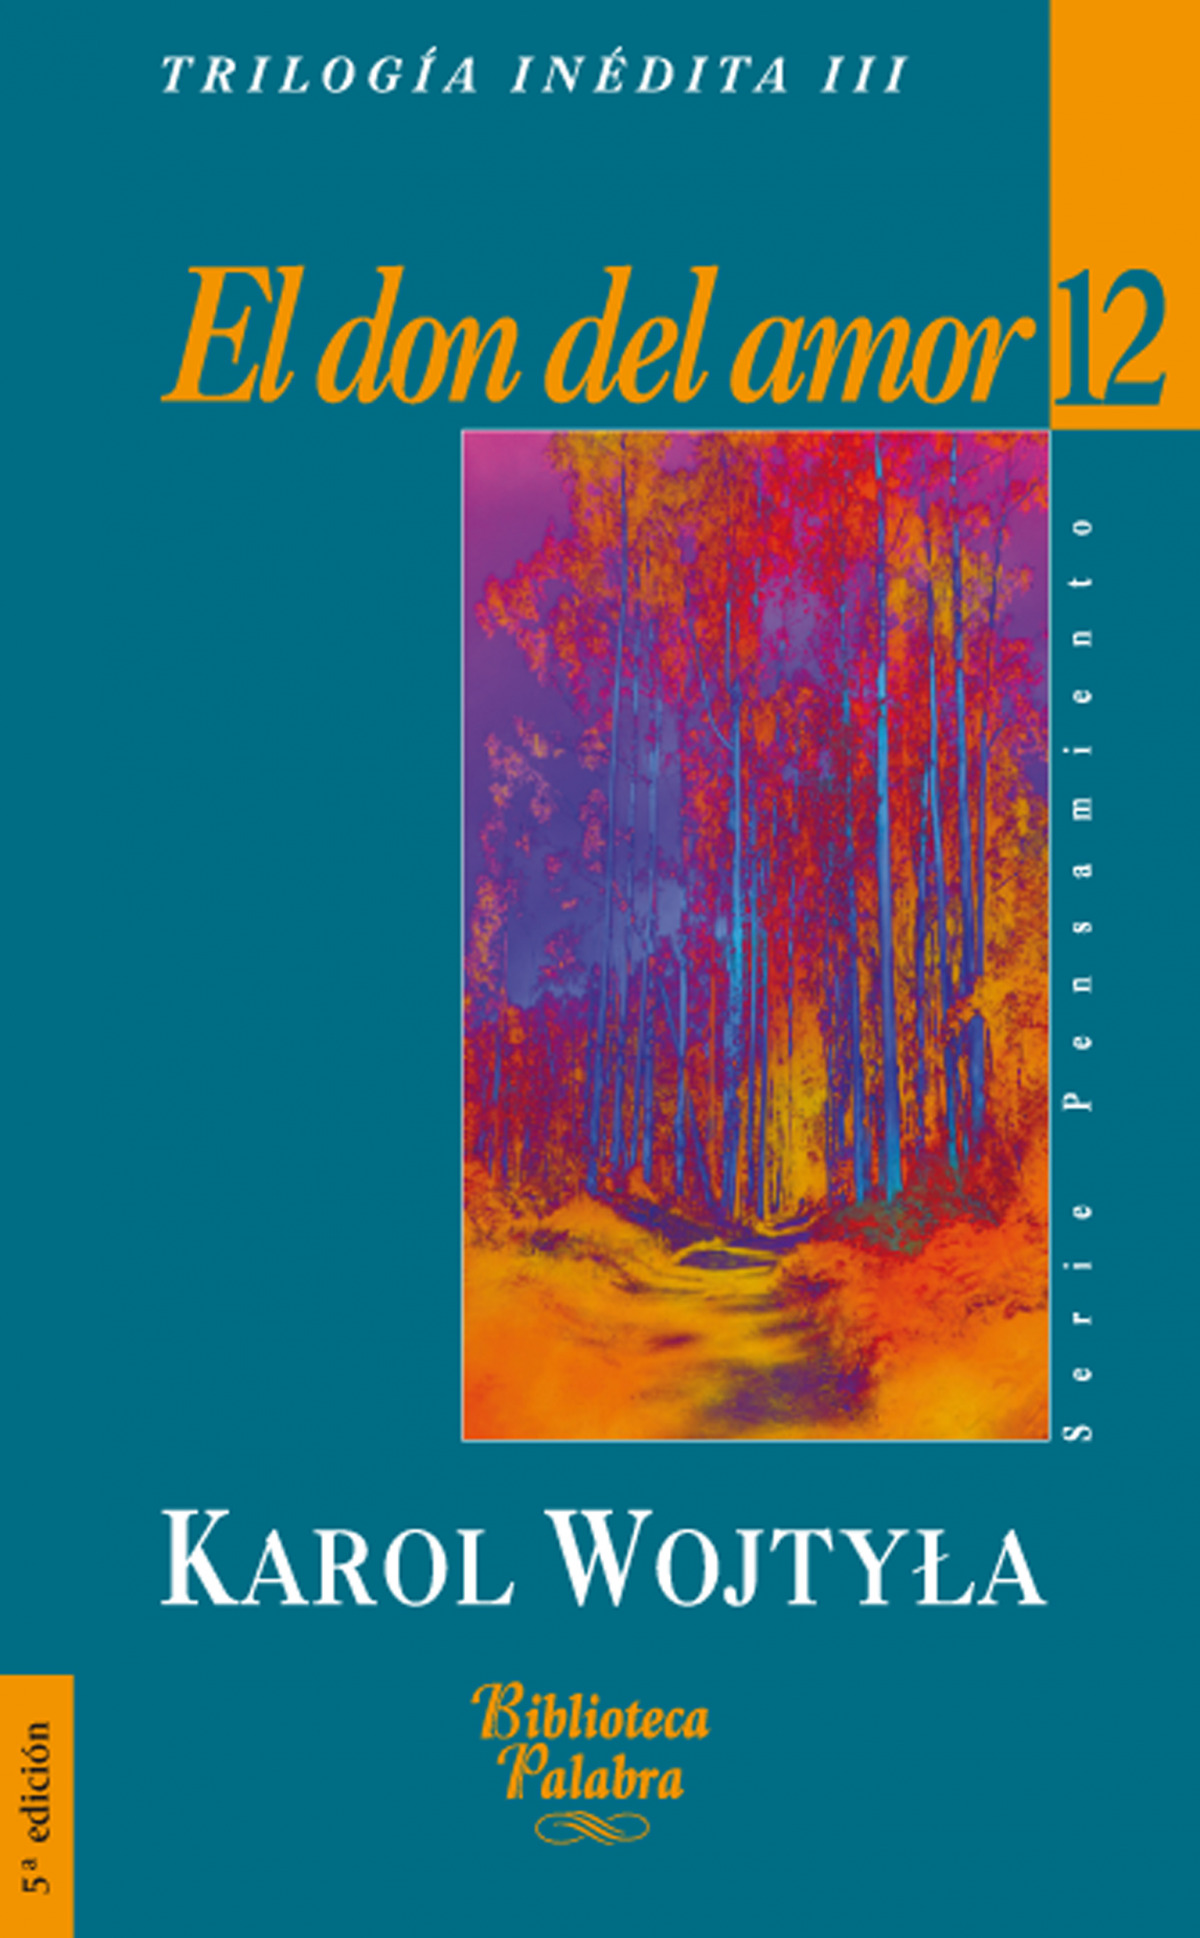 El don del amor. escritos sobre la familia - Wojtyla, Karol